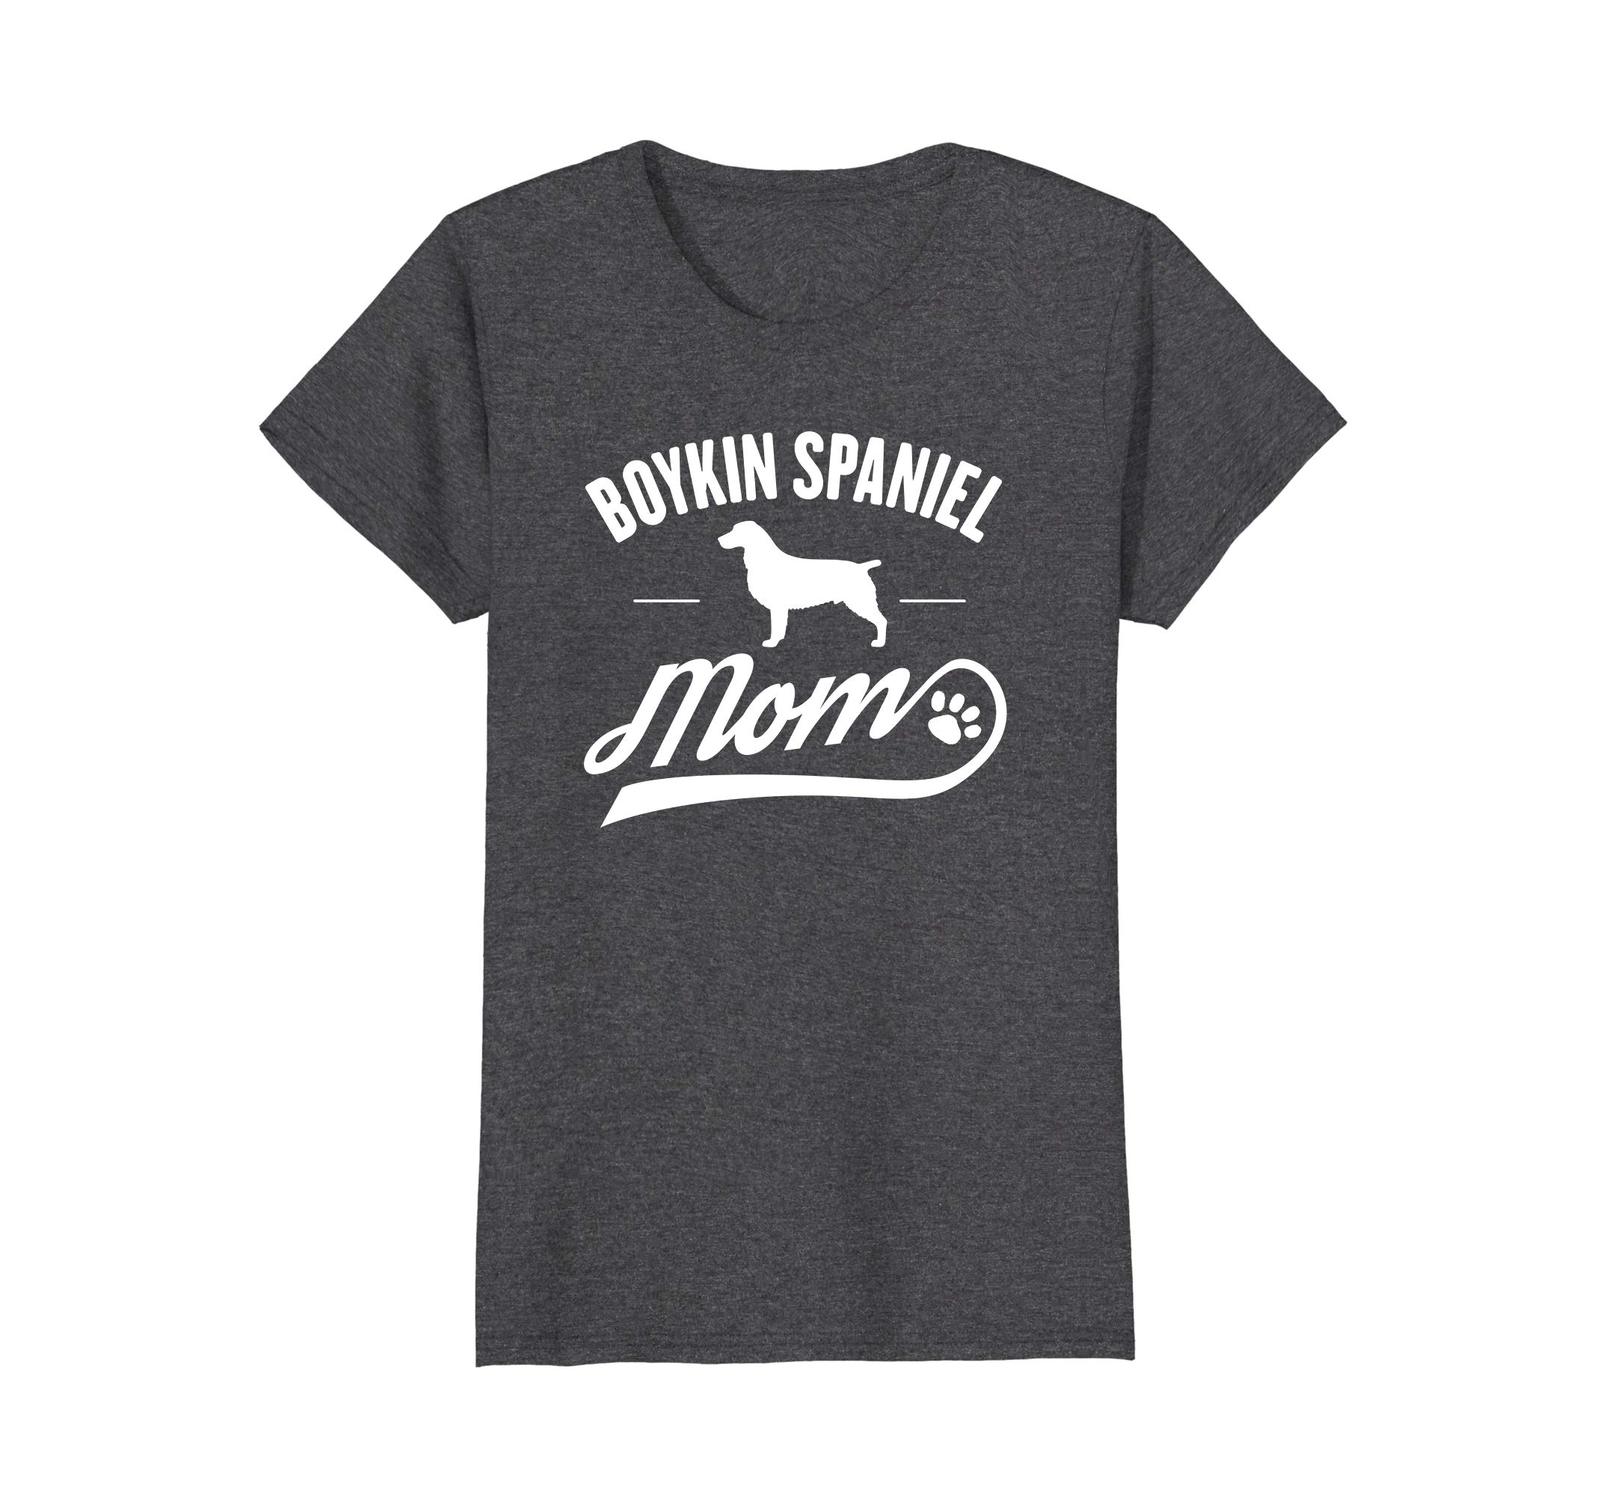 Dog Fashion - Boykin Spaniel Dog Mom T-Shirt - Dog Owner Lover T-Shirt Wowen